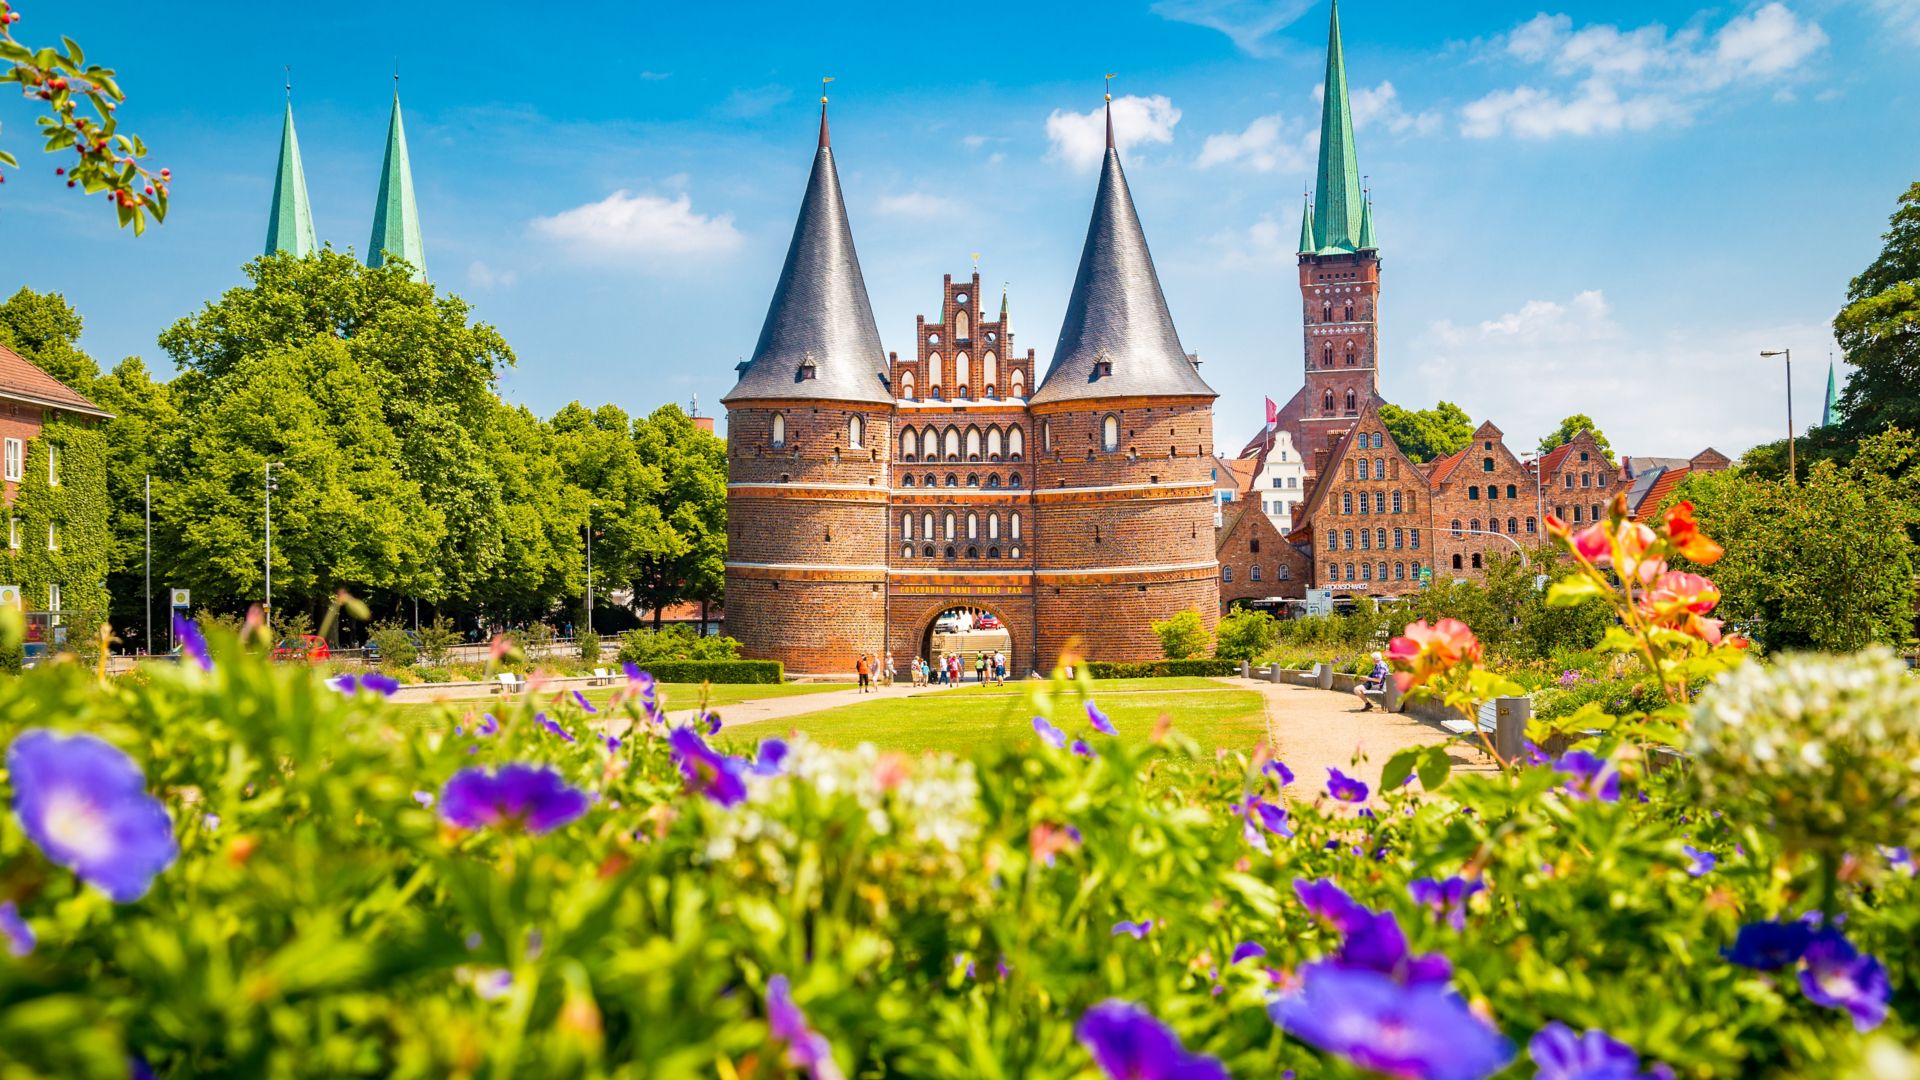 La vieille ville historique de Lübeck, avec sa célèbre porte de Holstein en été, dans le Schleswig-Holstein, au nord de l’Allemagne